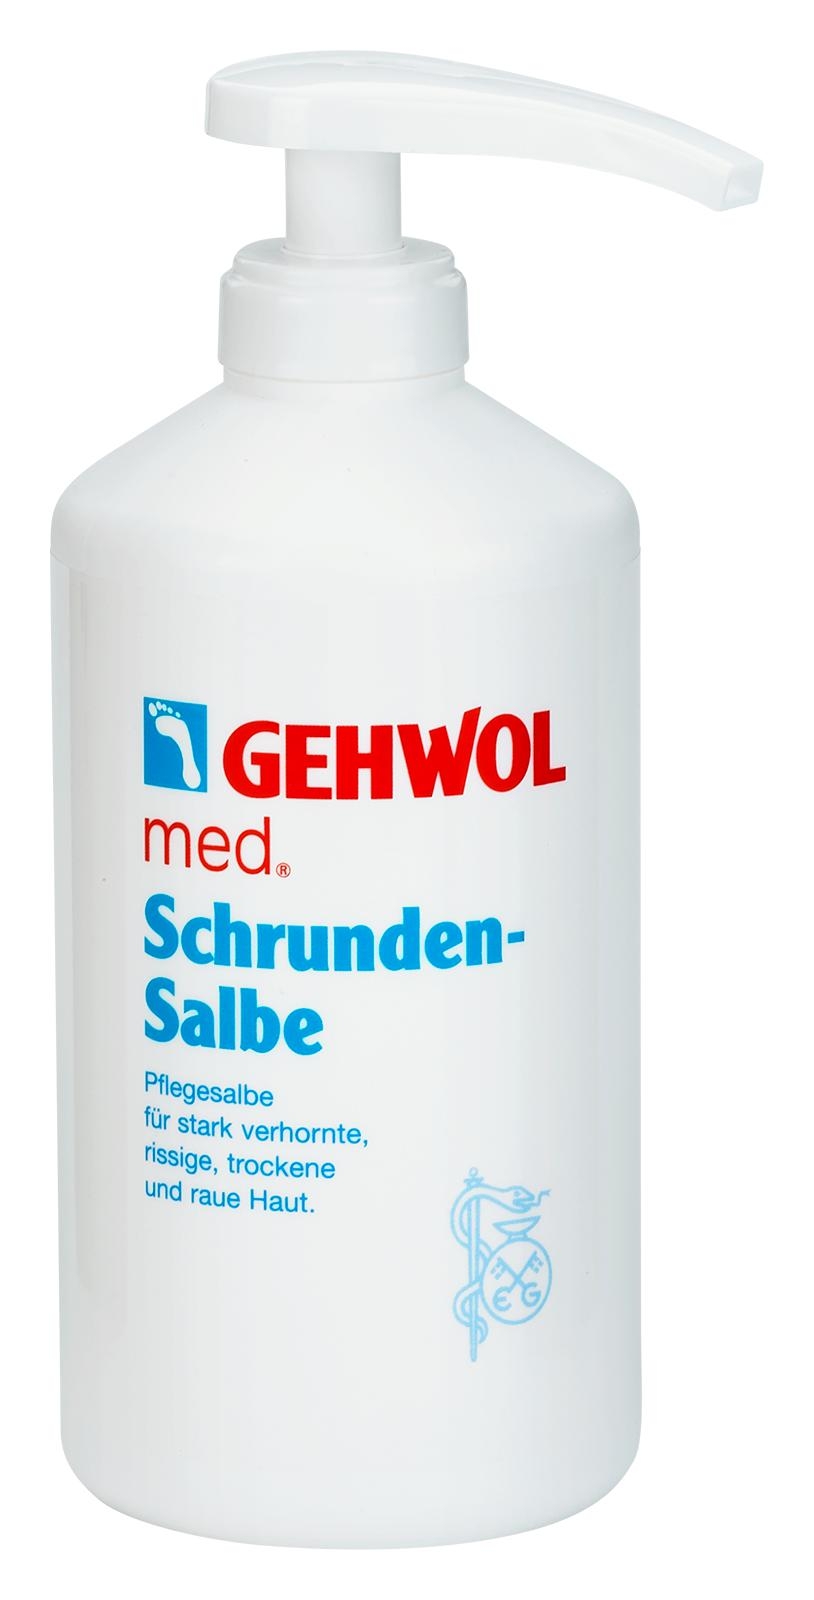 GEHWOL med Schrunden-Salbe 500 ml